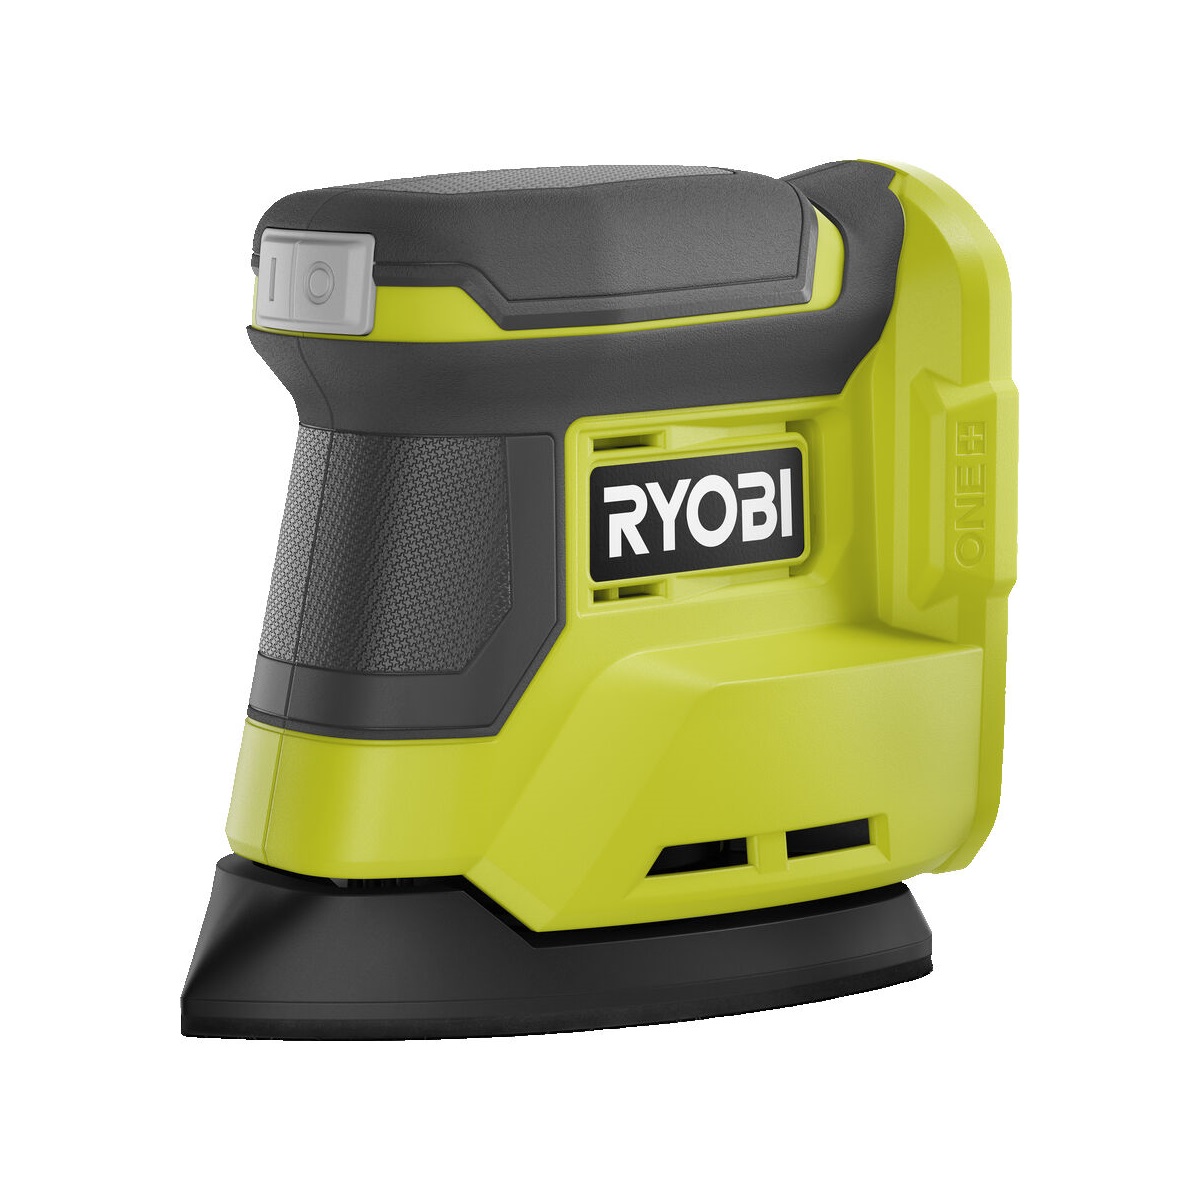 Ryobi RPS18-0 aku vibrační bruska ONE + (bez baterie a nabíječky)